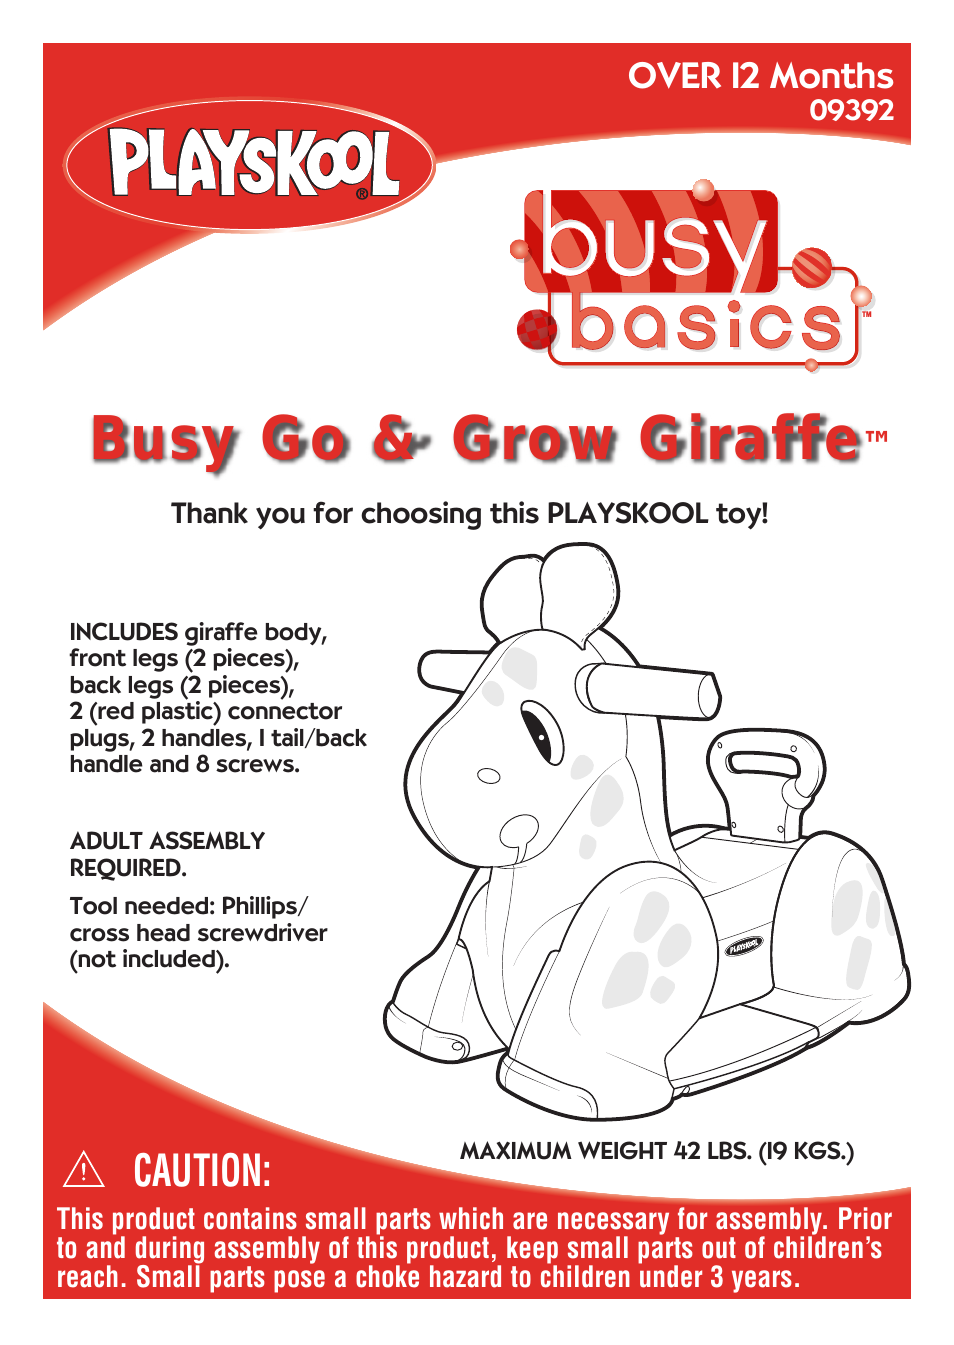 Busy Go & Grow Giraffe 09392